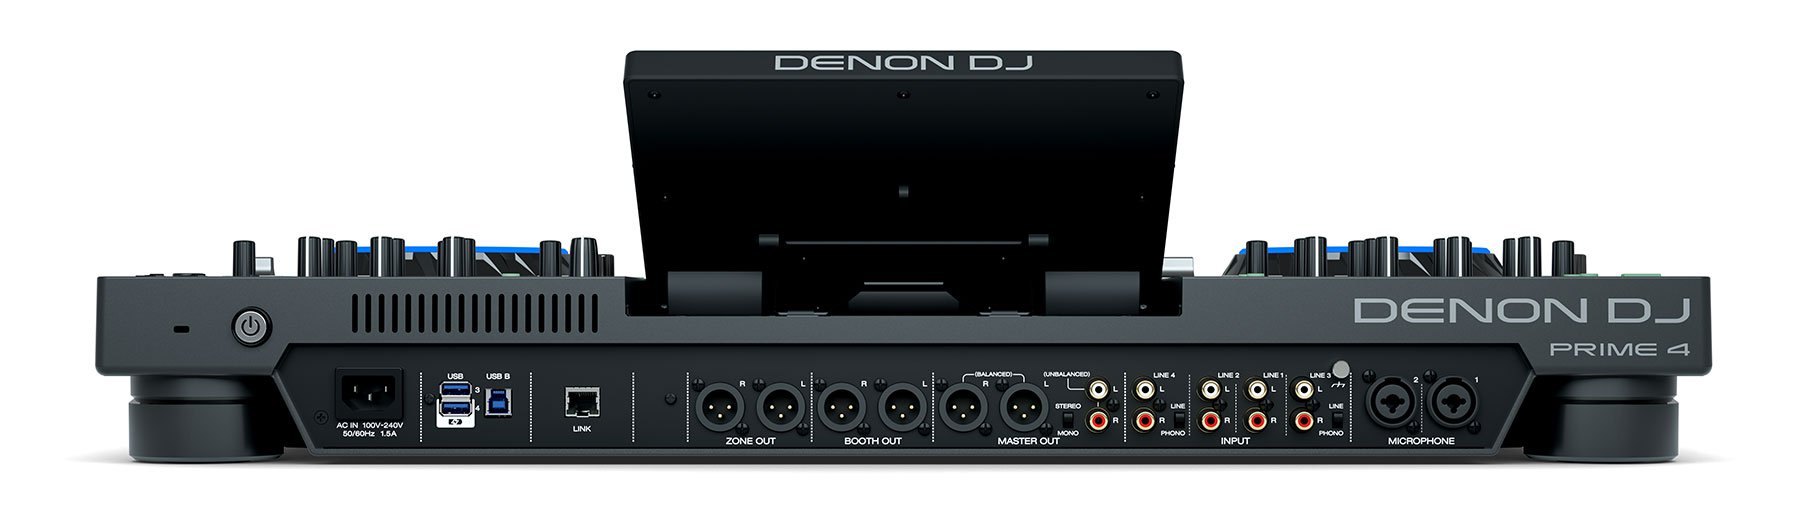 Thiết bị DJ hiện đại nhất thế giới Denon DJ Prime 4